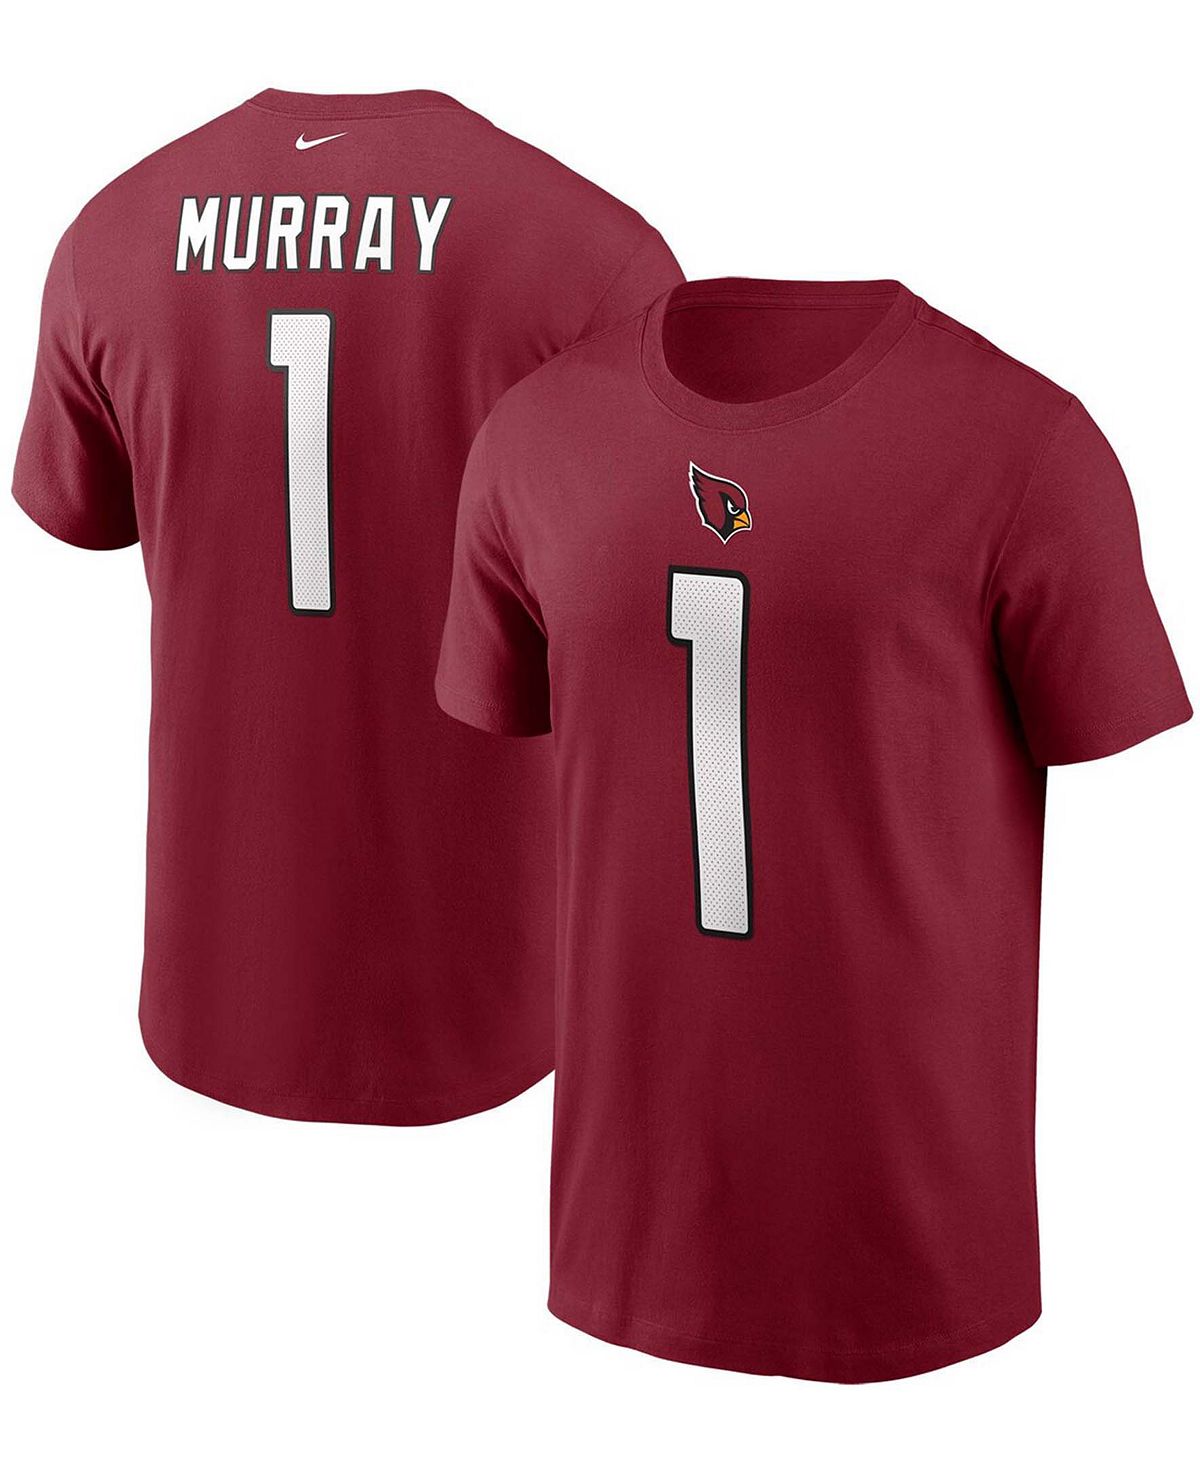 Мужская футболка с именем и номером Kyler Murray Cardinal Arizona Cardinals Nike